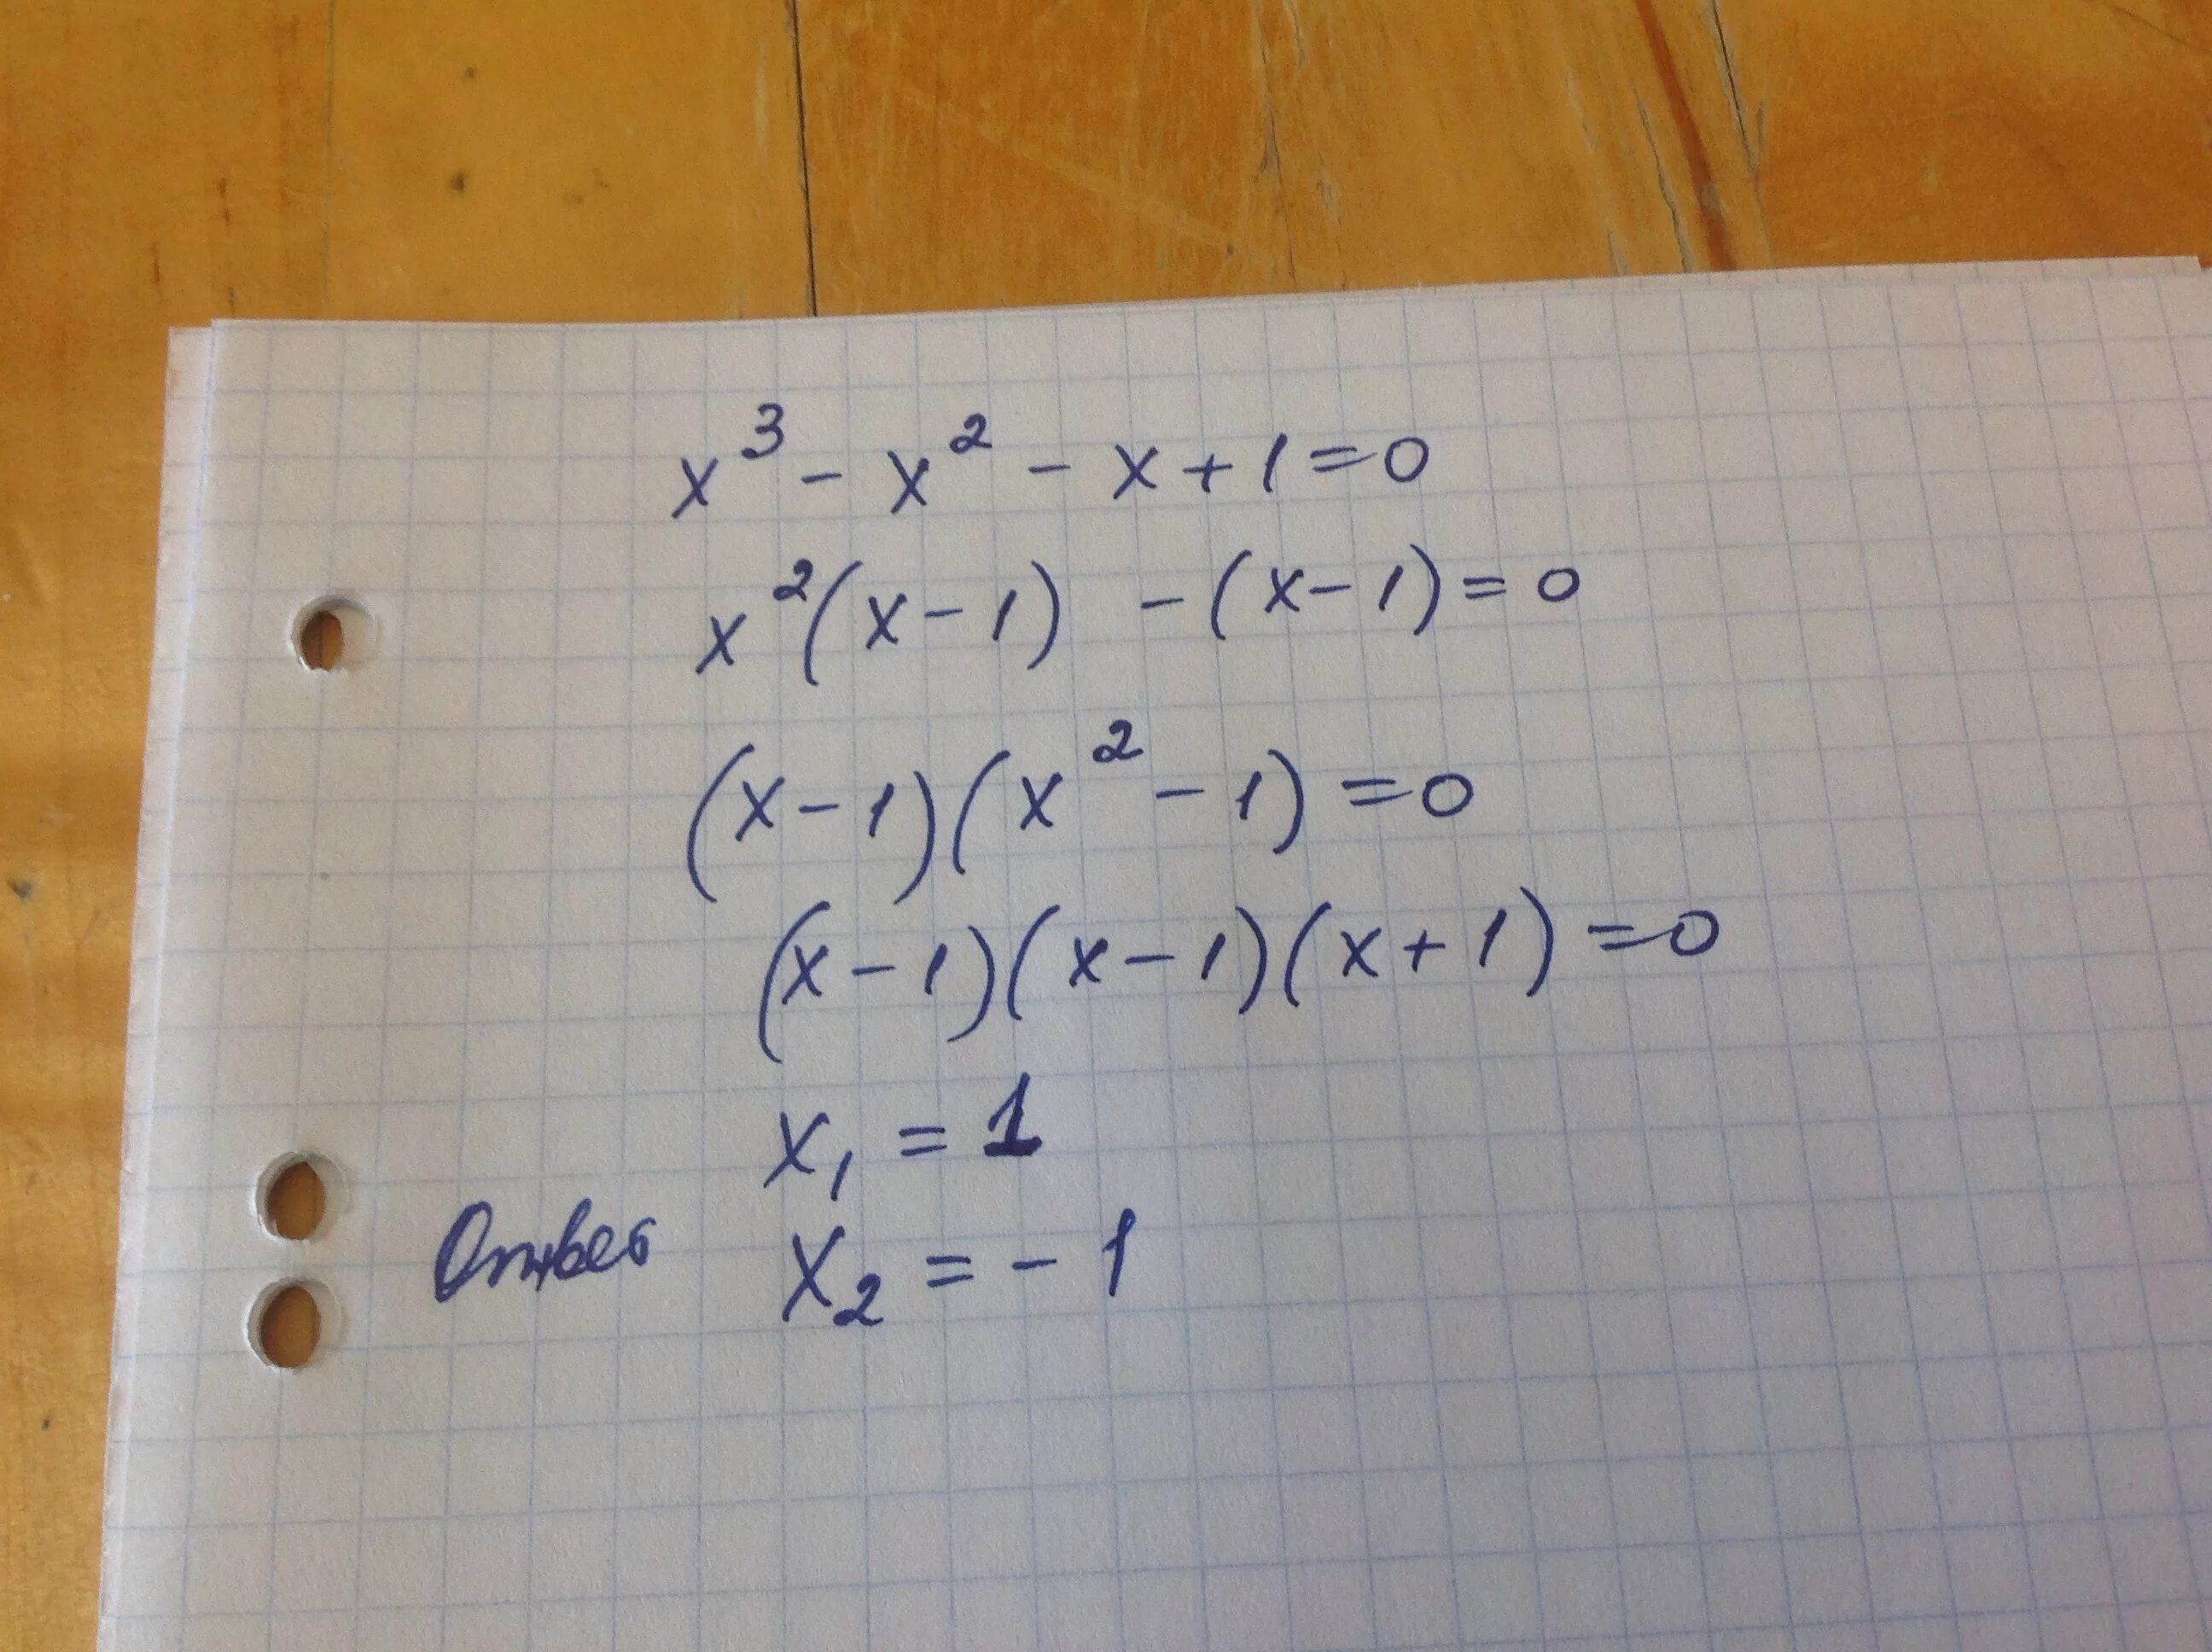 23 2x 3 16 x 2 40x. (X-2)(-2x-3)=0. X^3-X^2-X+1=0. 2^X=3^X. 3-X/3=X/2.